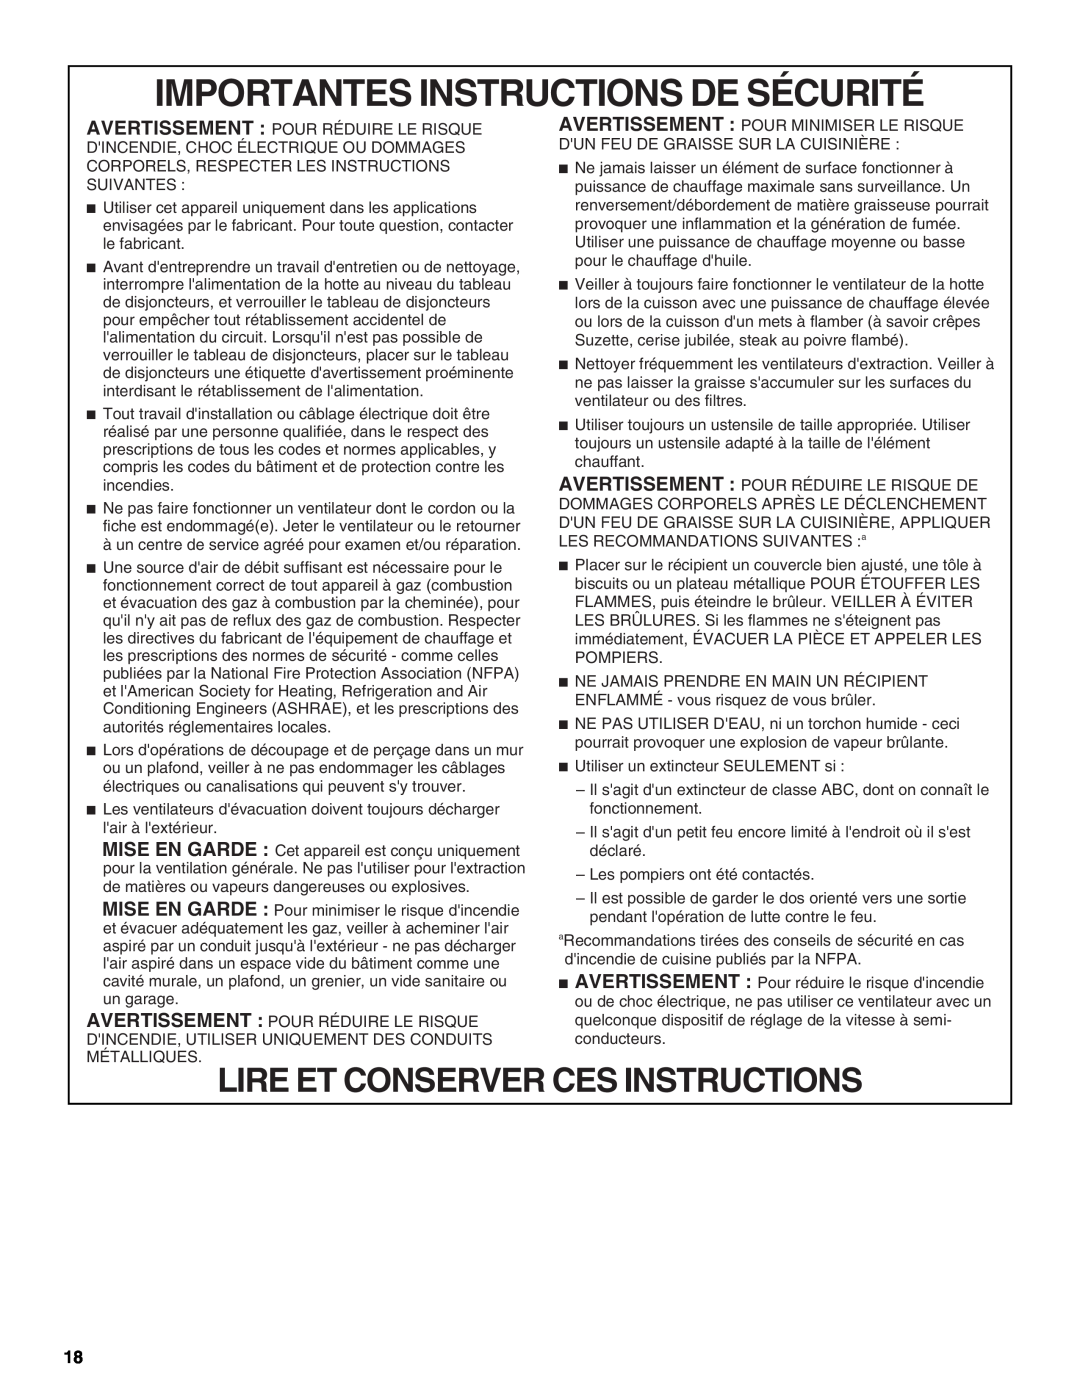 Whirlpool LI31HC/W10526058F Importantes Instructions De Sécurité, Lire Et Conserver Ces Instructions 